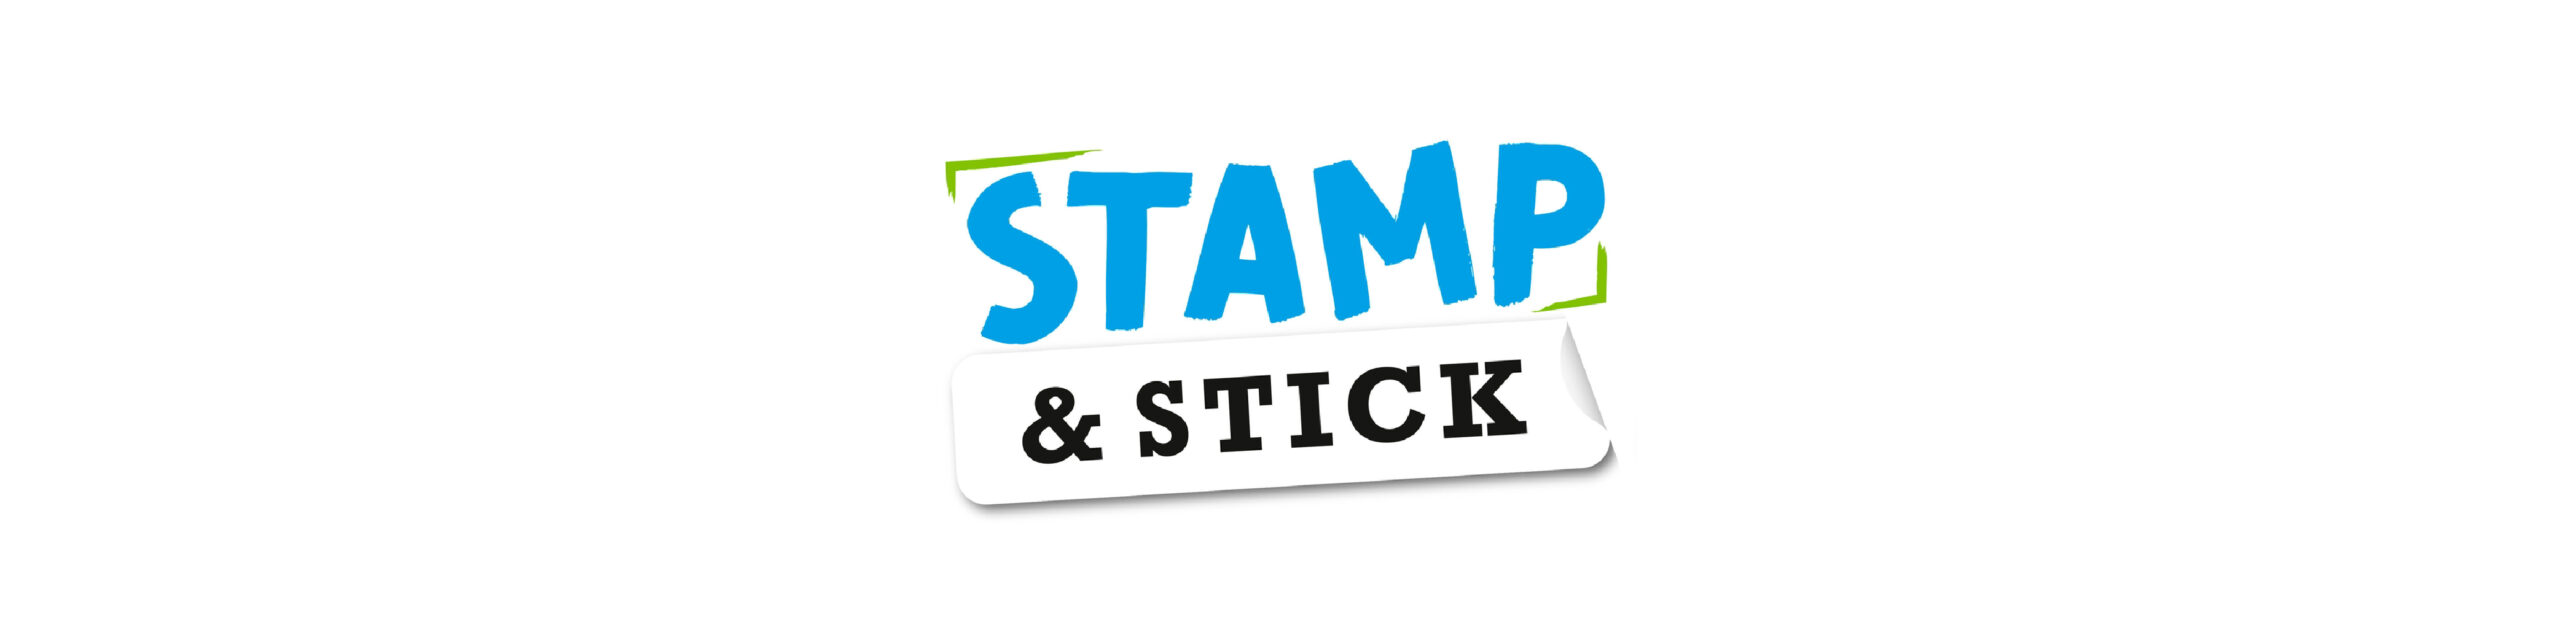 Σφραγίδα για ύφασμα STAMP 'N STICK